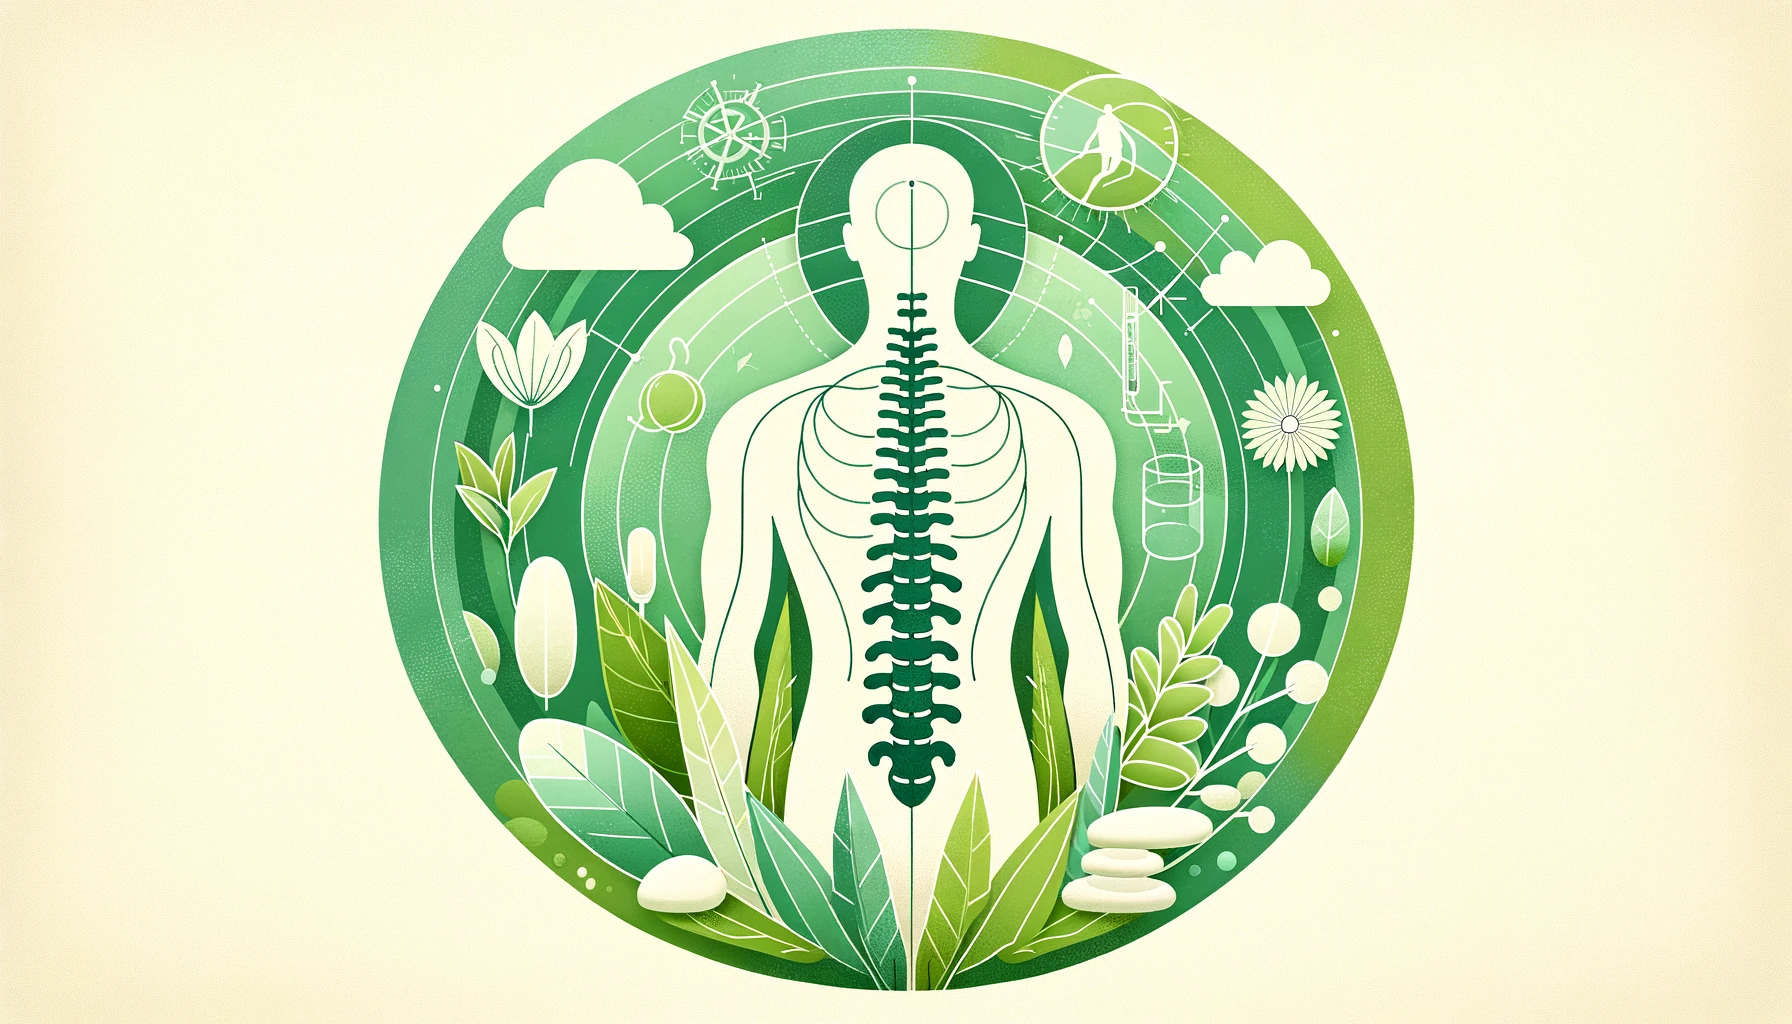 整体治療の主要な要素である体のアライメントと脊椎の健康を象徴するシンボルを含み、薄い緑の背景が自然との優しいつながりを示しています。デザインは落ち着いており、自然環境における身体的なバランスとウェルネスの感覚を伝えます。